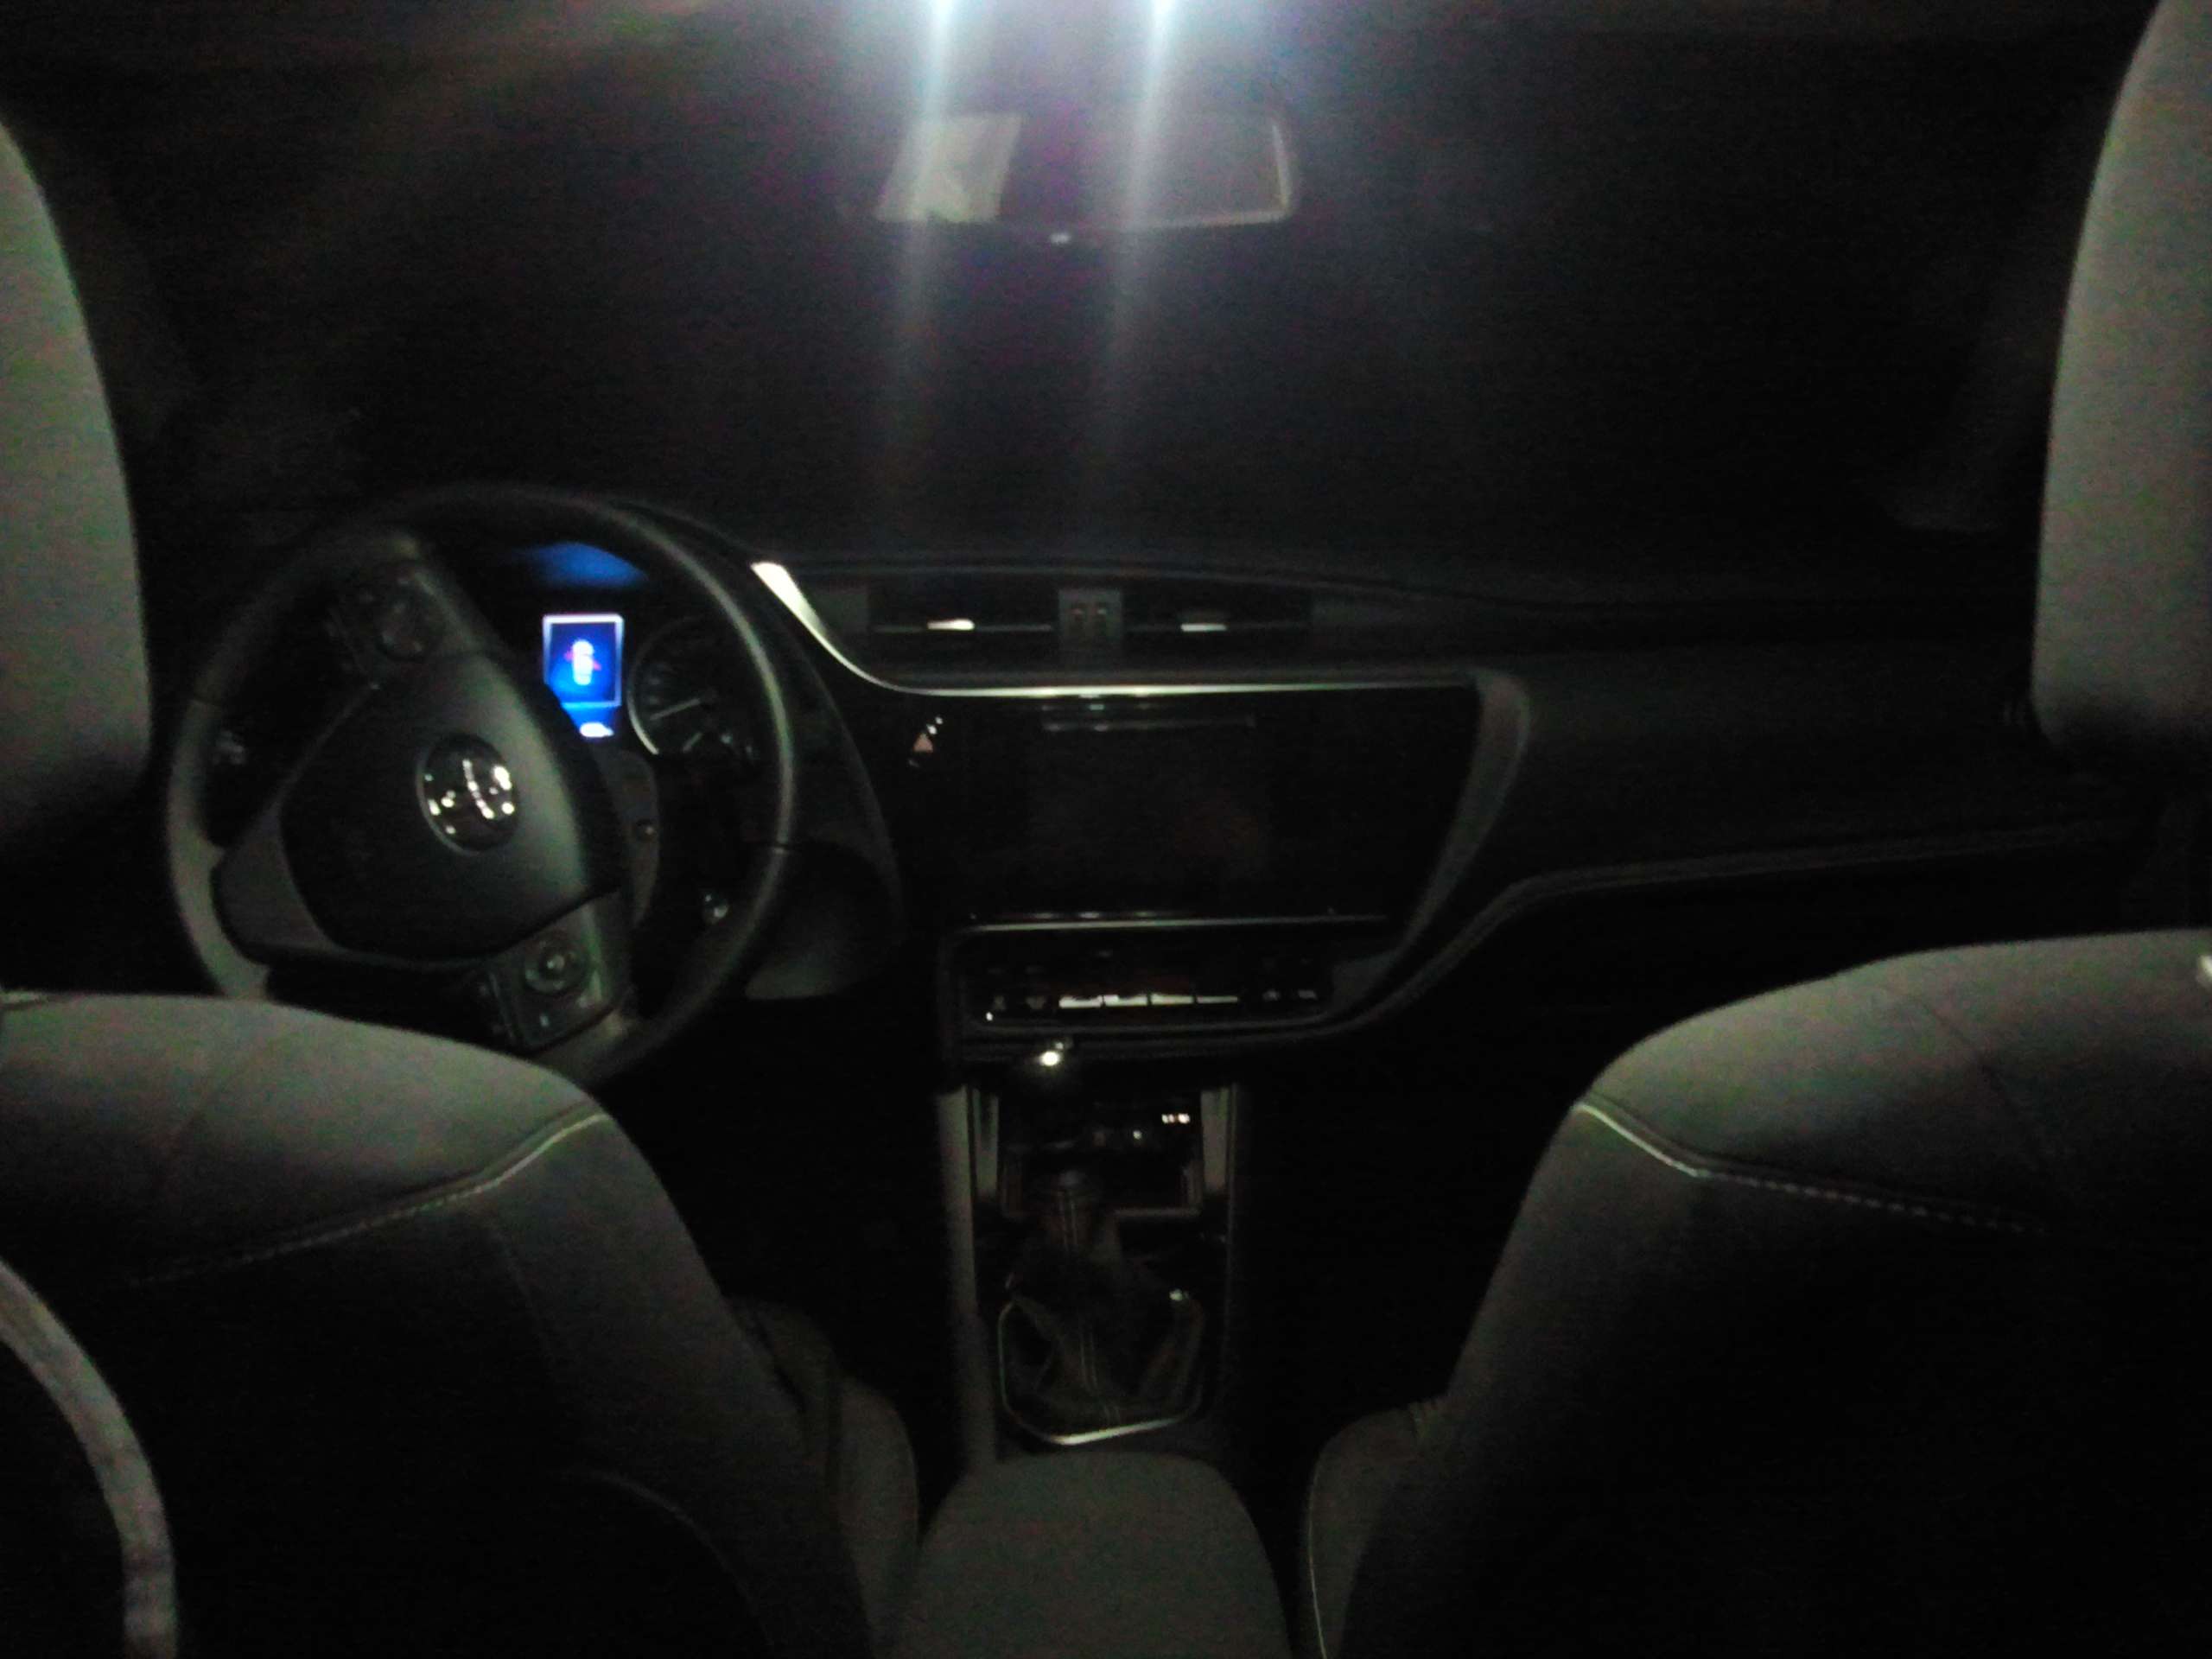 Toyota Corolla Biała Perła Zmiana wewnętrznego